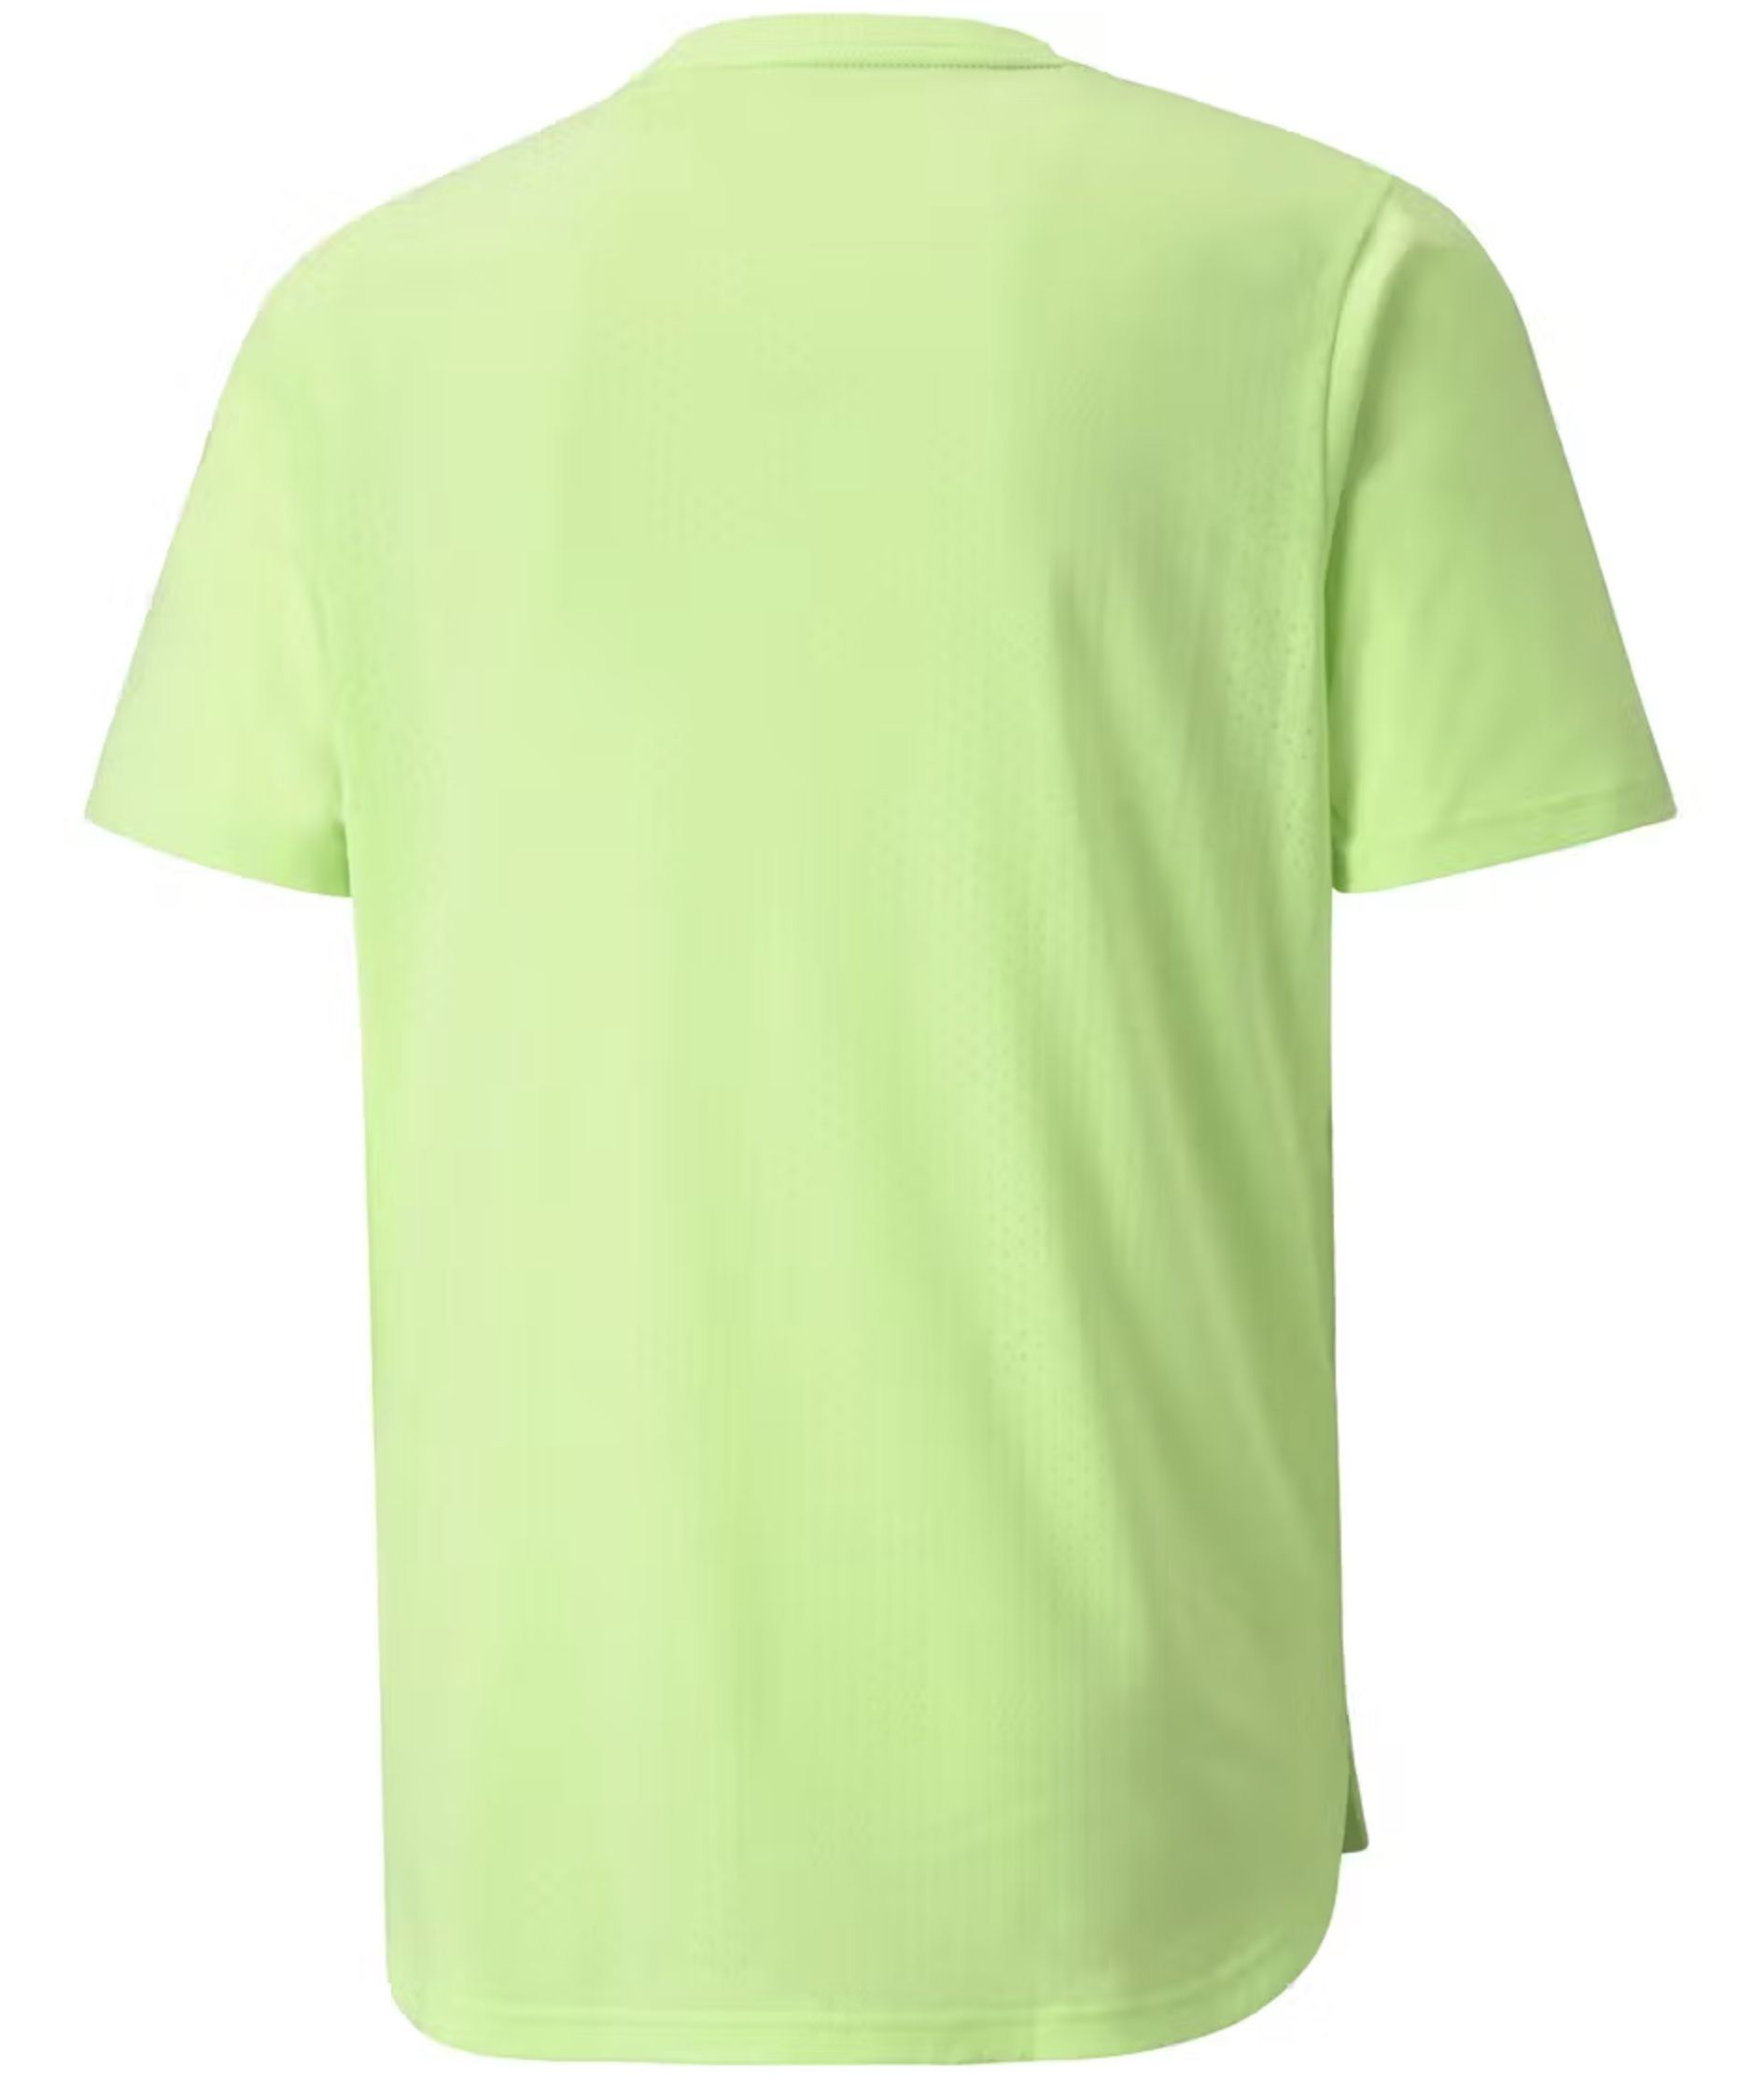 Puma Herren dryCELL Sport T Shirt in Green Glare für 11,98€ (statt 16€)